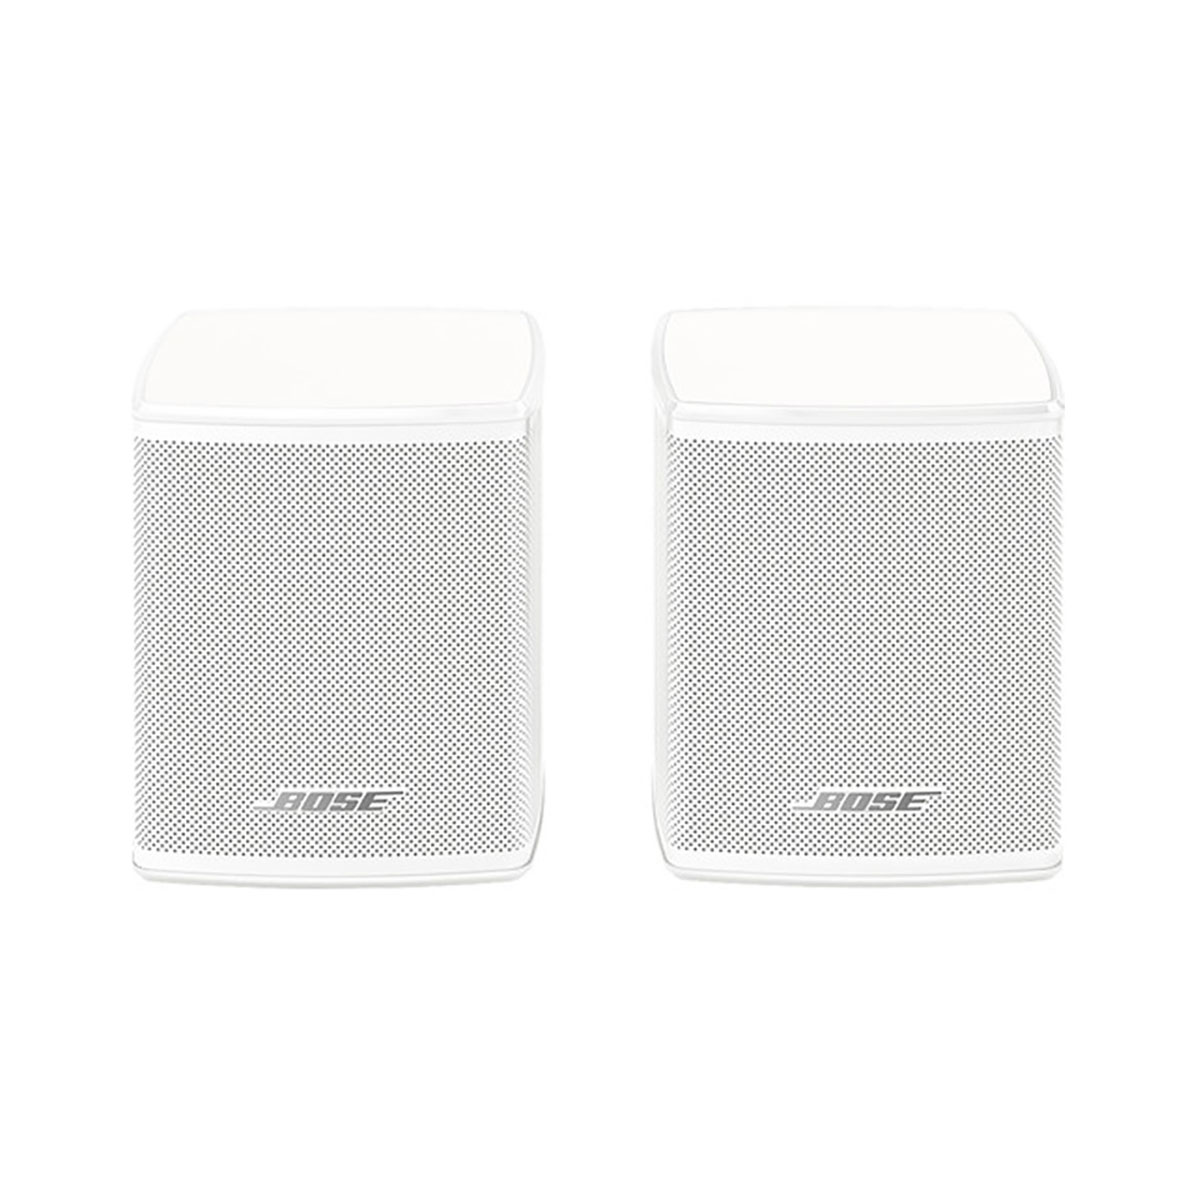 Bose - Wireless Surround Speakers (Pair), White